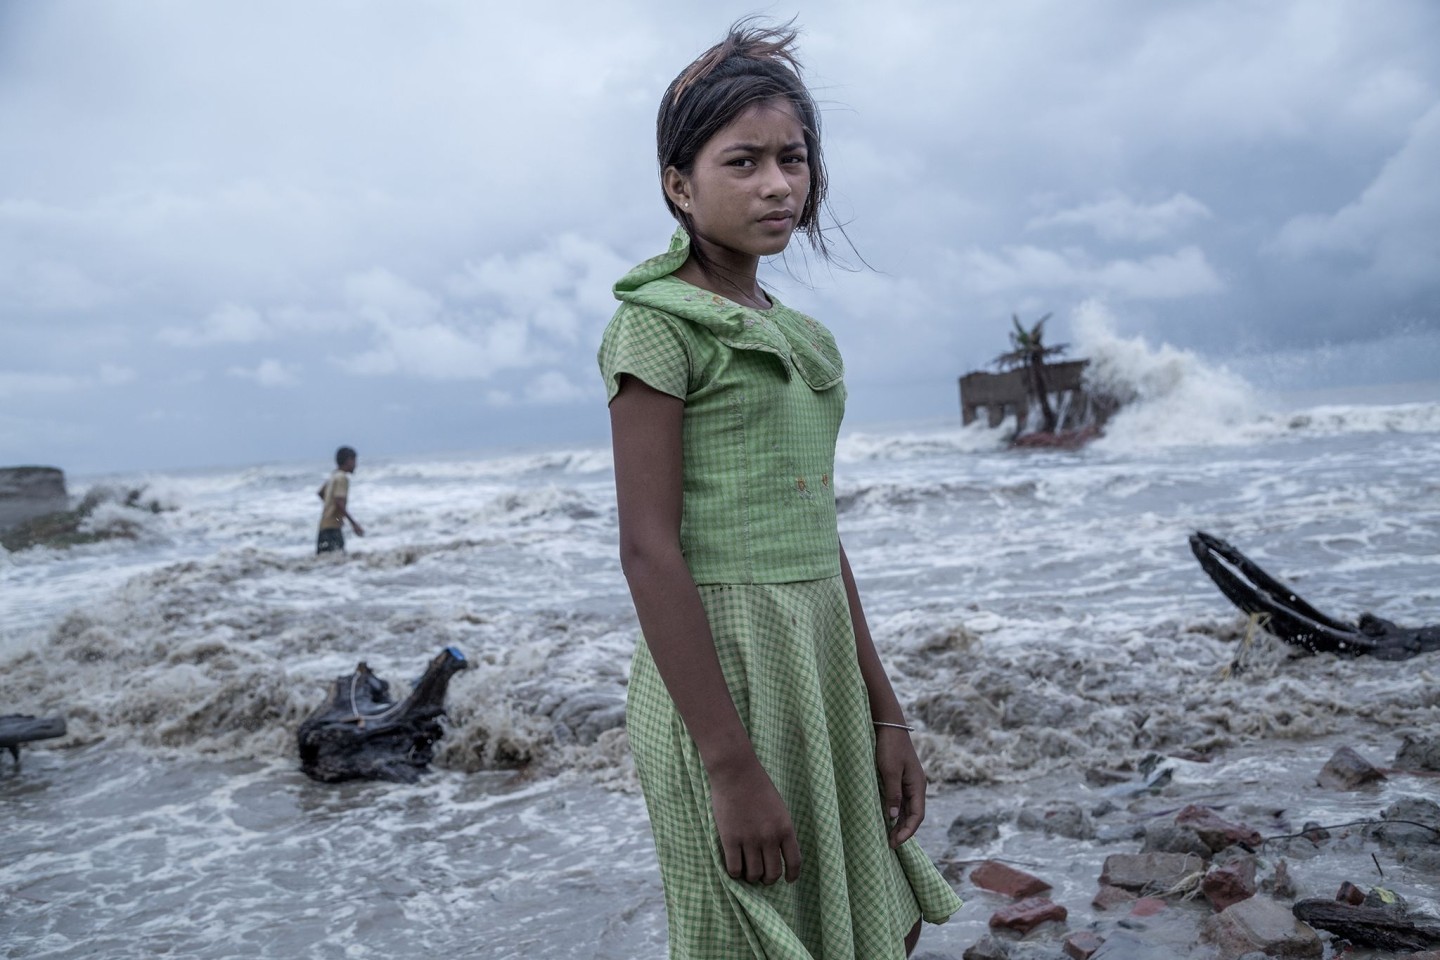 Ein Mädchen steht vor den Überresten von ihrem Teeladen, der durch das Meerwasser auf der Insel Namkhana völlig zerstört ist. Das Foto von Fotograf Supratim Bhattacharjee erhält den ers...